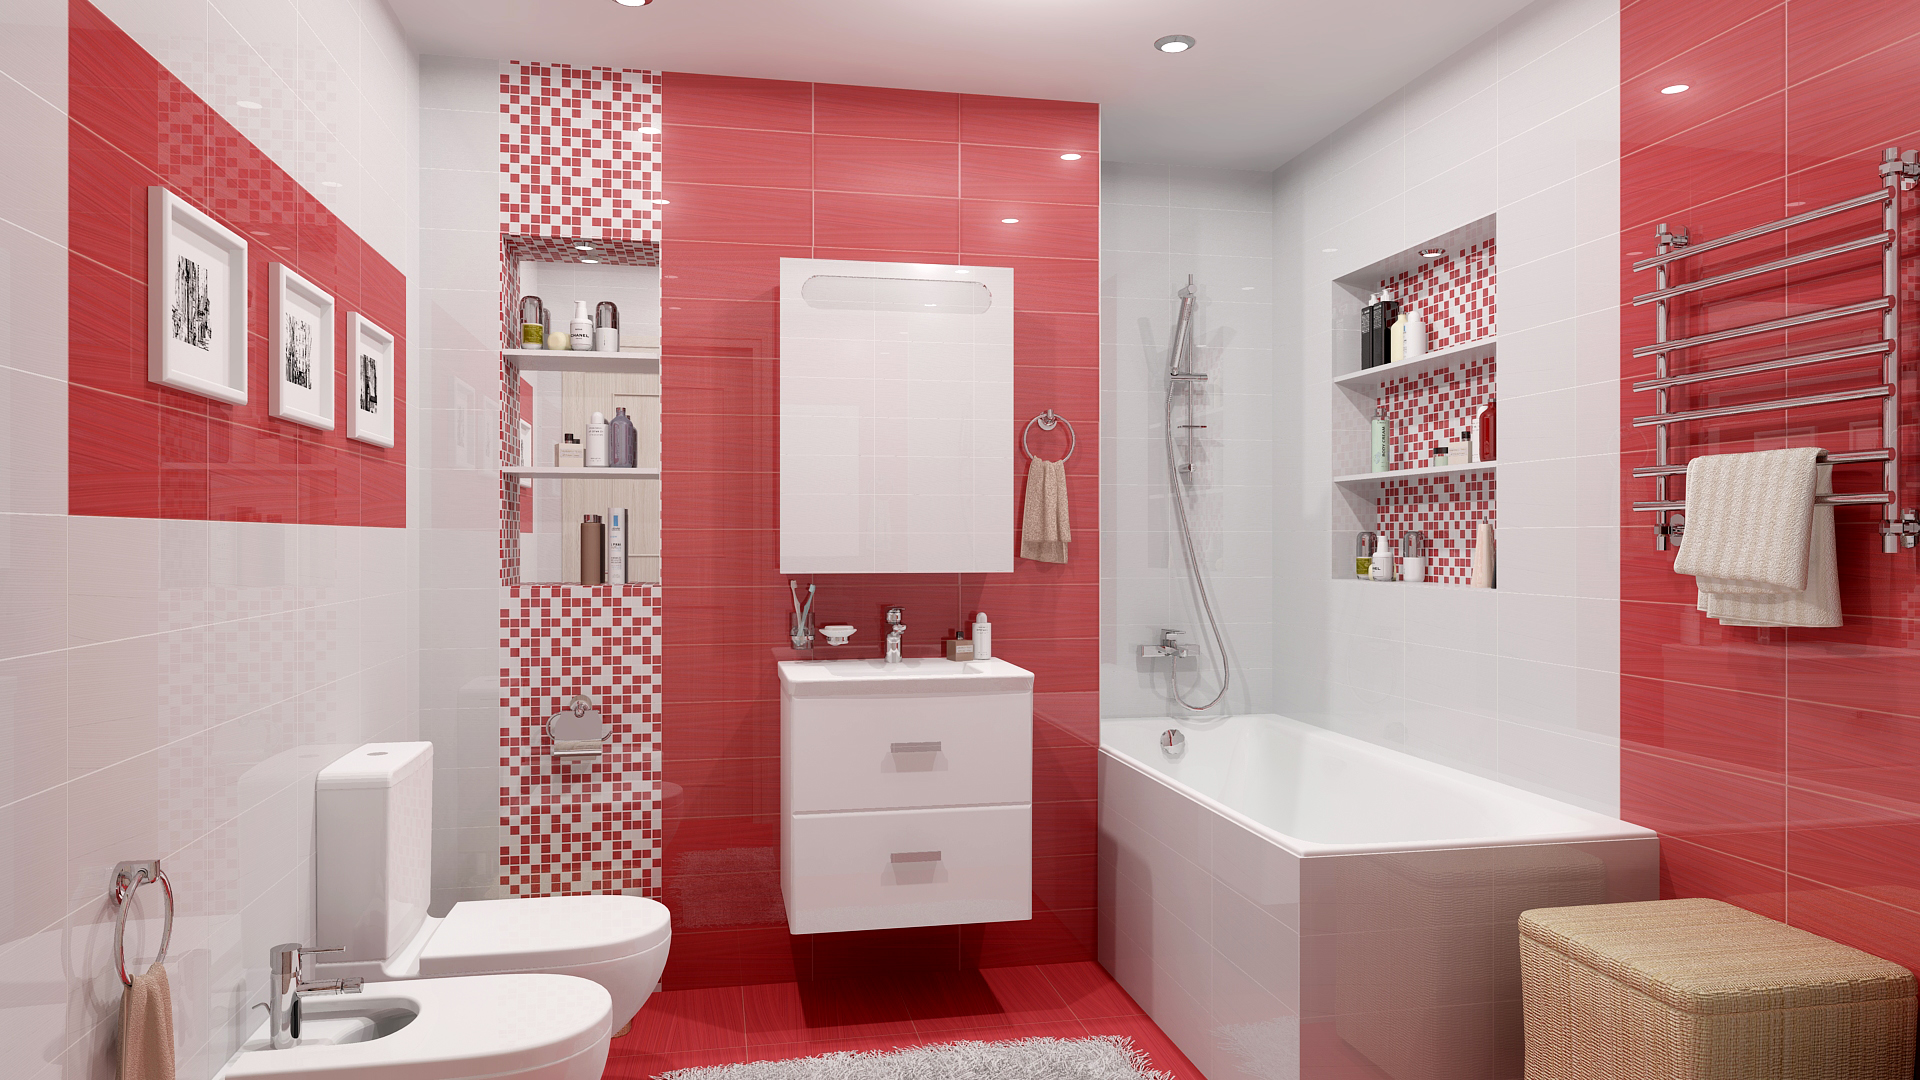 Оформление ванной комнаты плиткой: фото идеи обустройства. дизайн плитки для ванной комнаты: размеры, цвет, новинки, фото, сочетание, раскладка